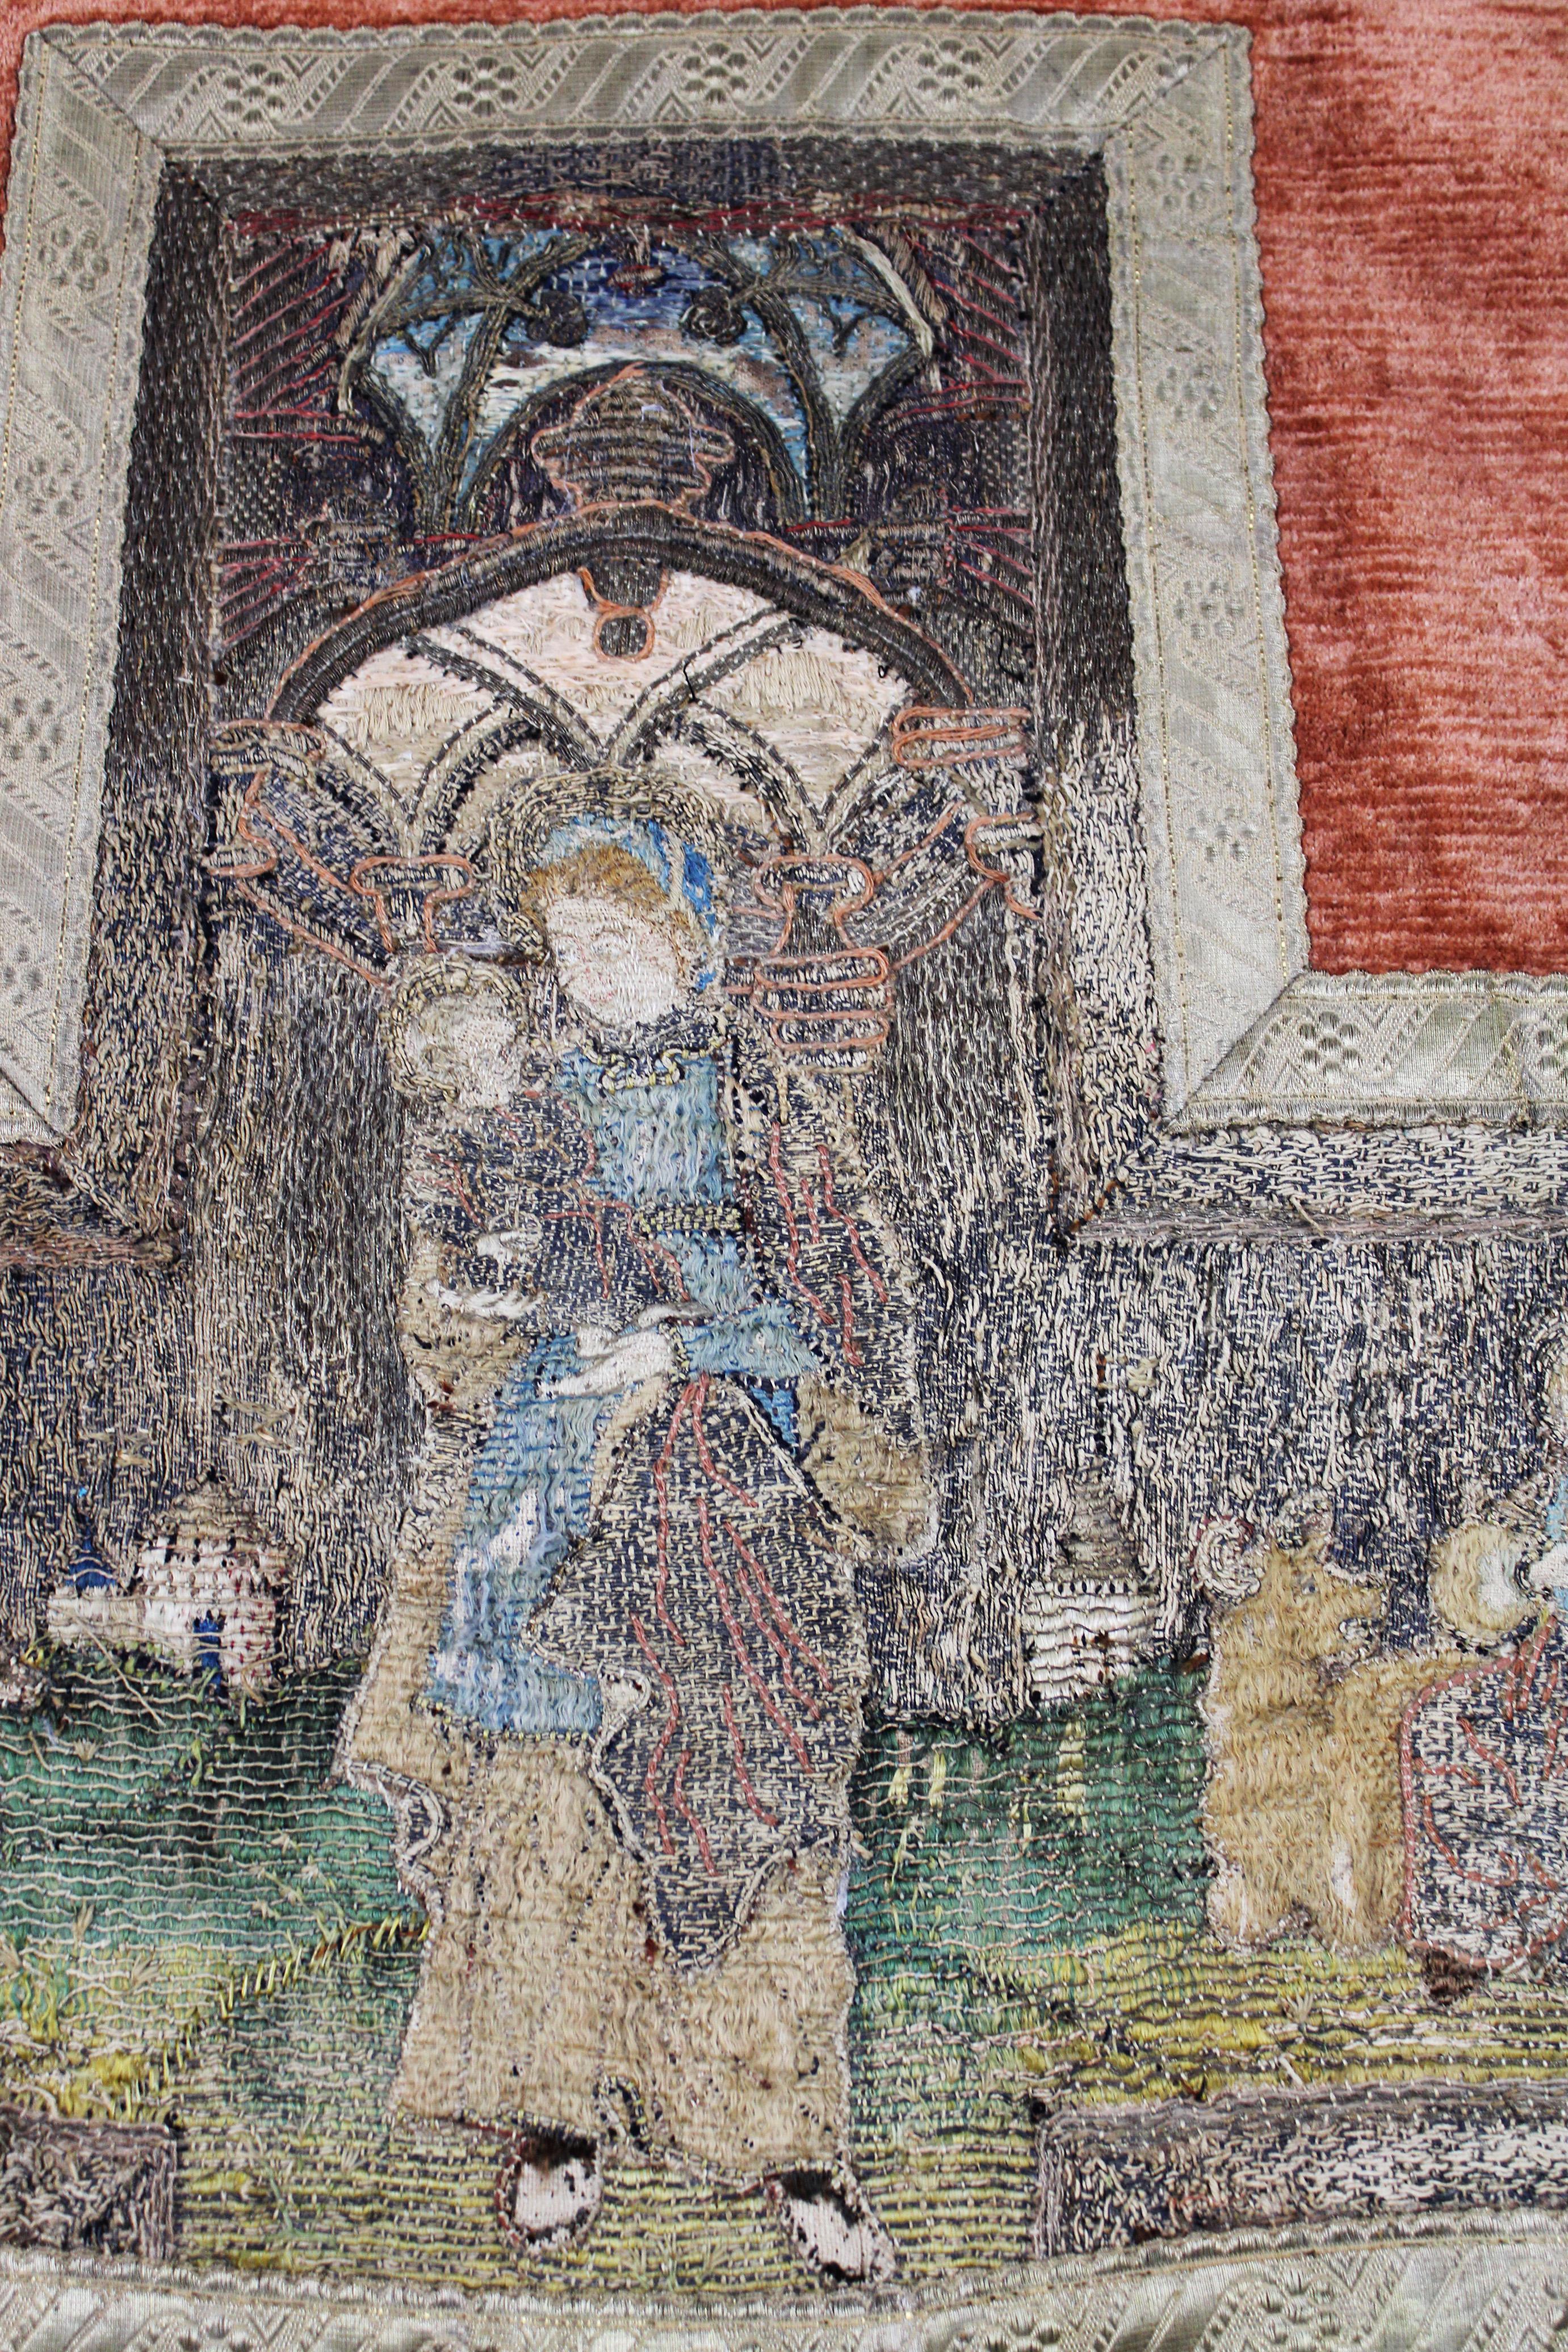 Ce fragment de chasuble est orné d'une broderie flamande à la main des XVe et XVIe siècles, représentant des scènes de la Vierge Marie, de la Madone et de l'enfant dans un décor de jardin. Créée avec de la soie italienne somptueuse, cette pièce